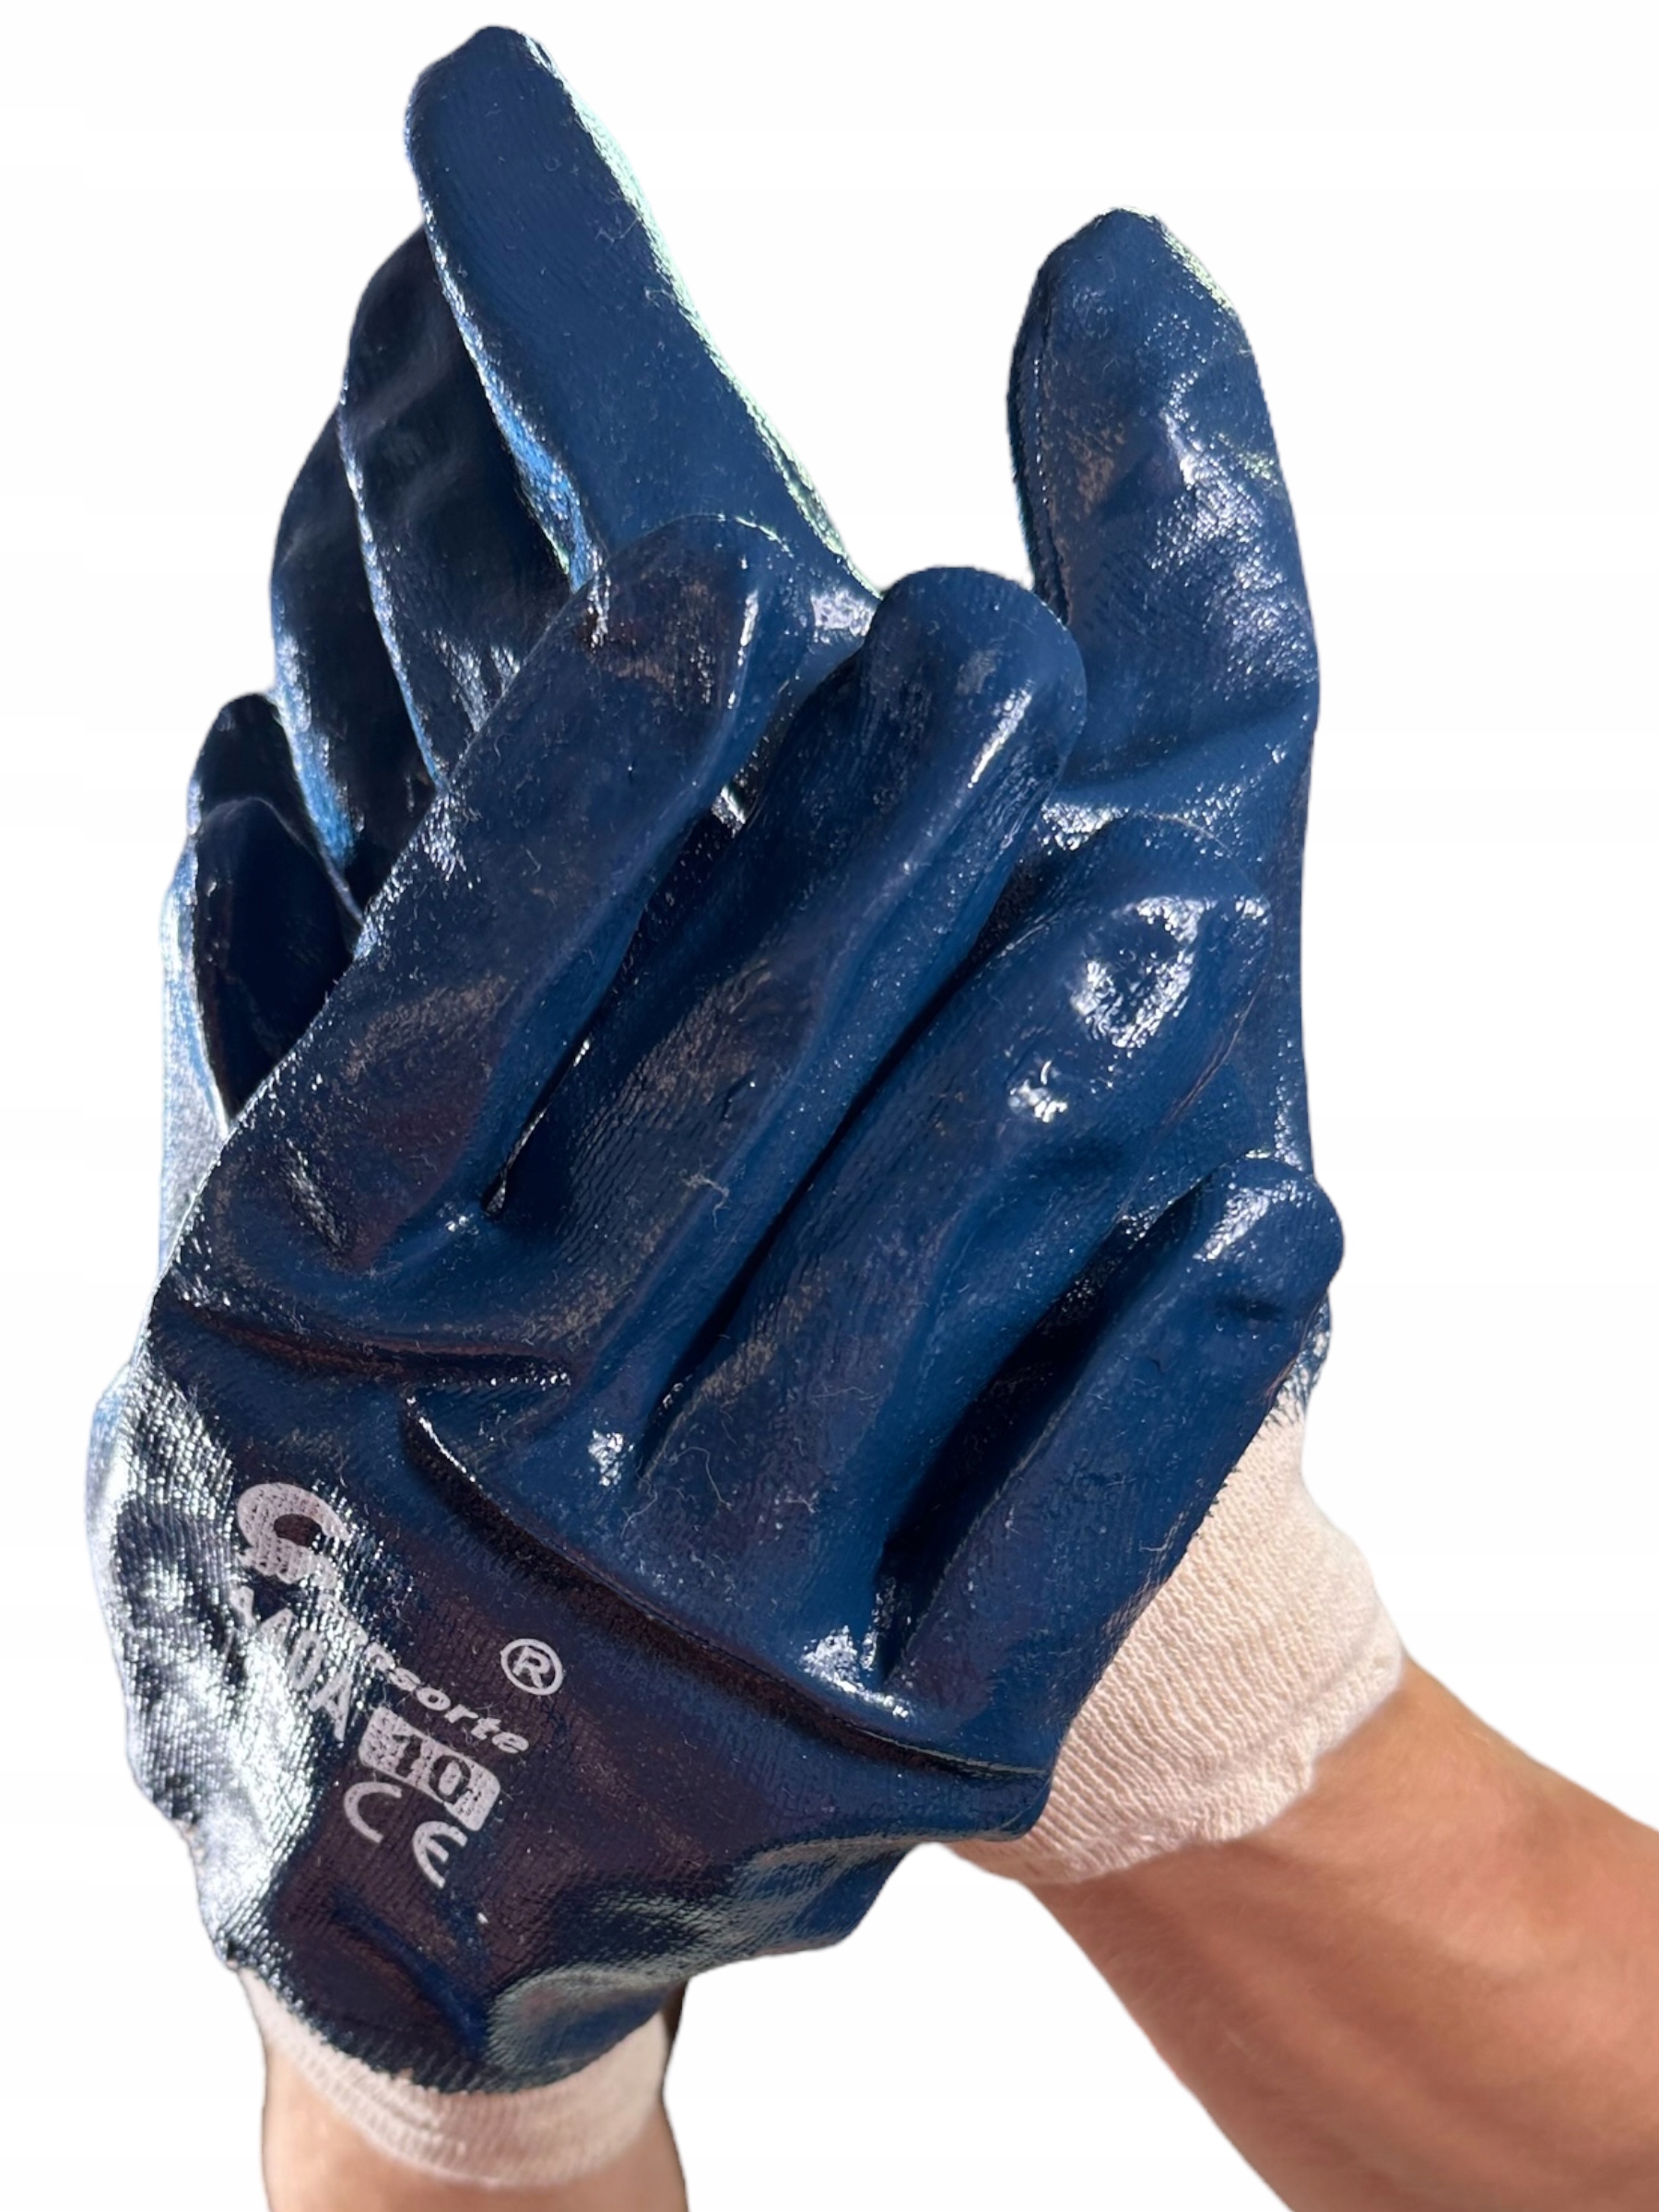 Rękawice robocze PREMIUM niebieskie rozmiar 10/XL Model N3203